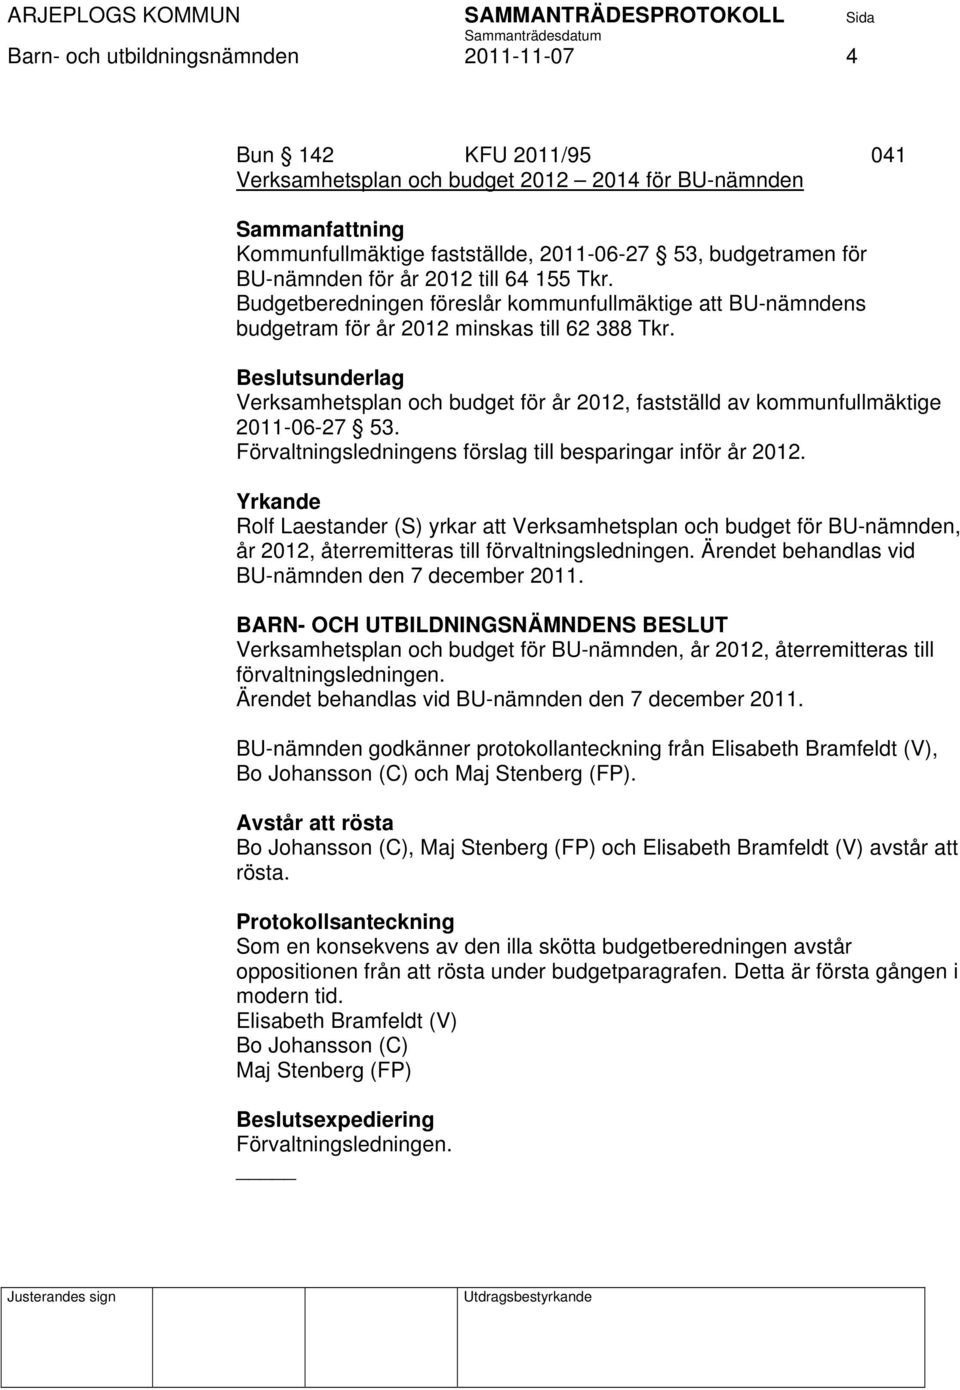 Beslutsunderlag Verksamhetsplan och budget för år 2012, fastställd av kommunfullmäktige 2011-06-27 53. Förvaltningsledningens förslag till besparingar inför år 2012.